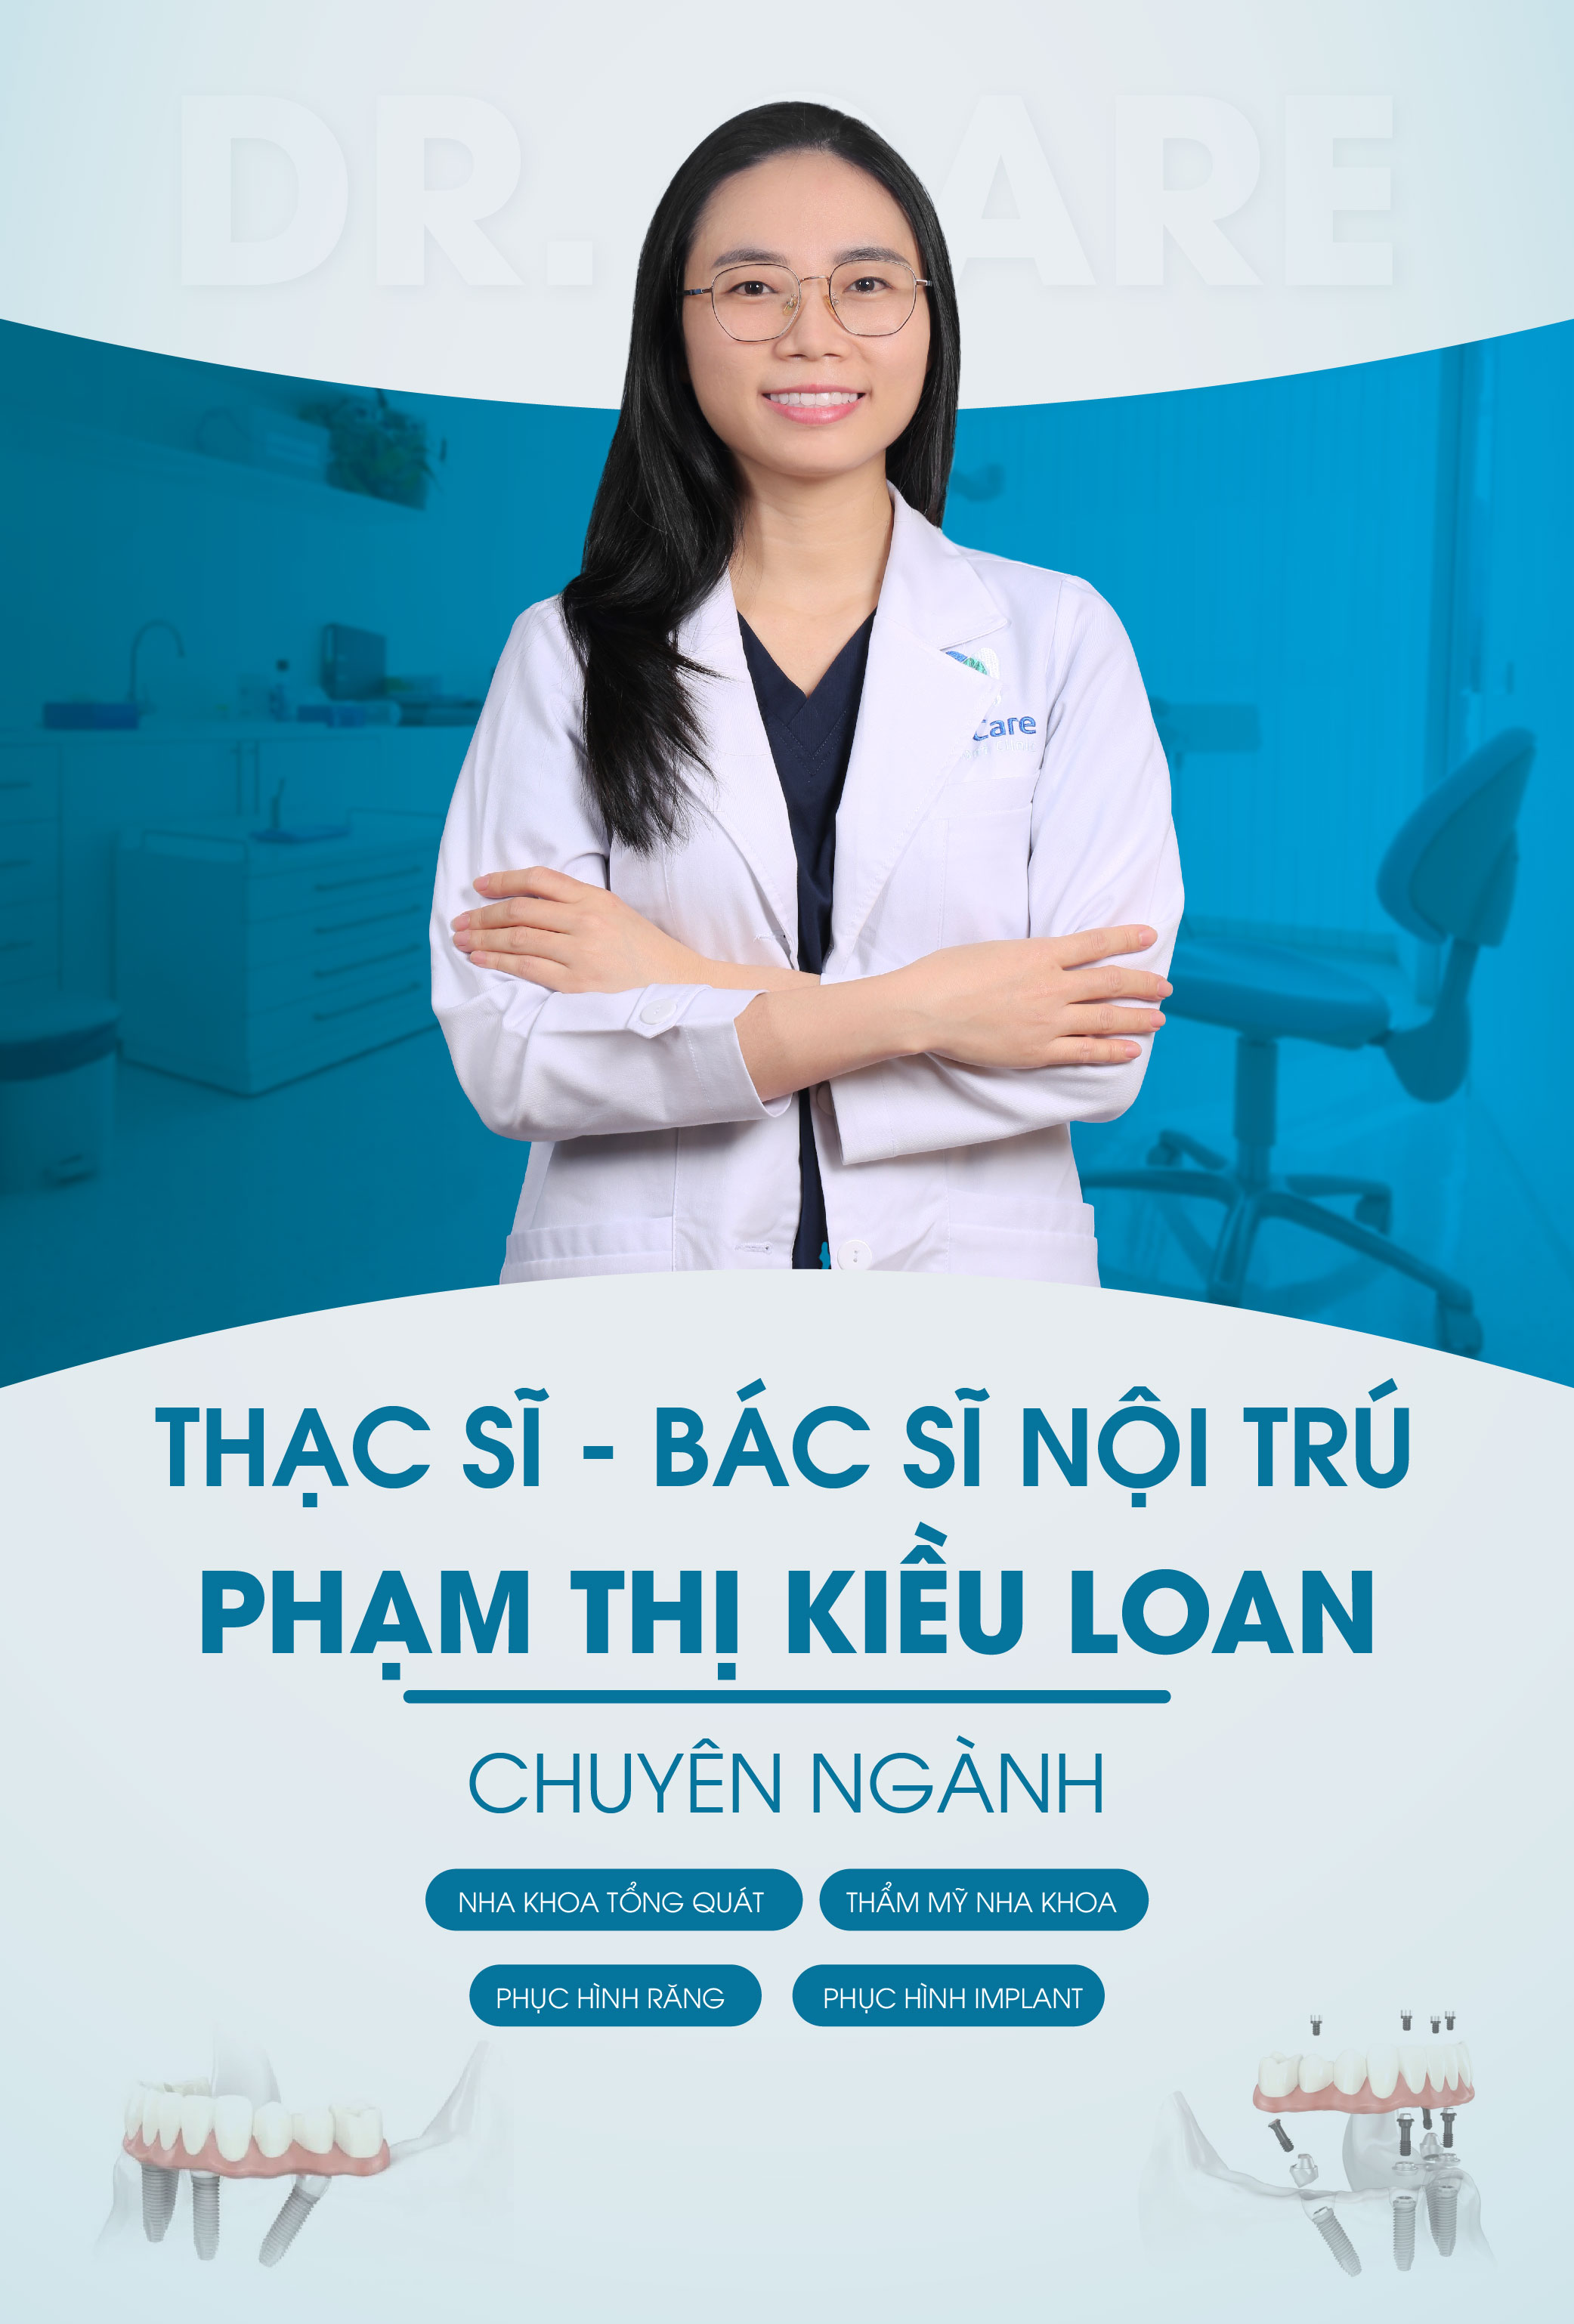 Bác sĩ Phạm Thị Kiều Loan